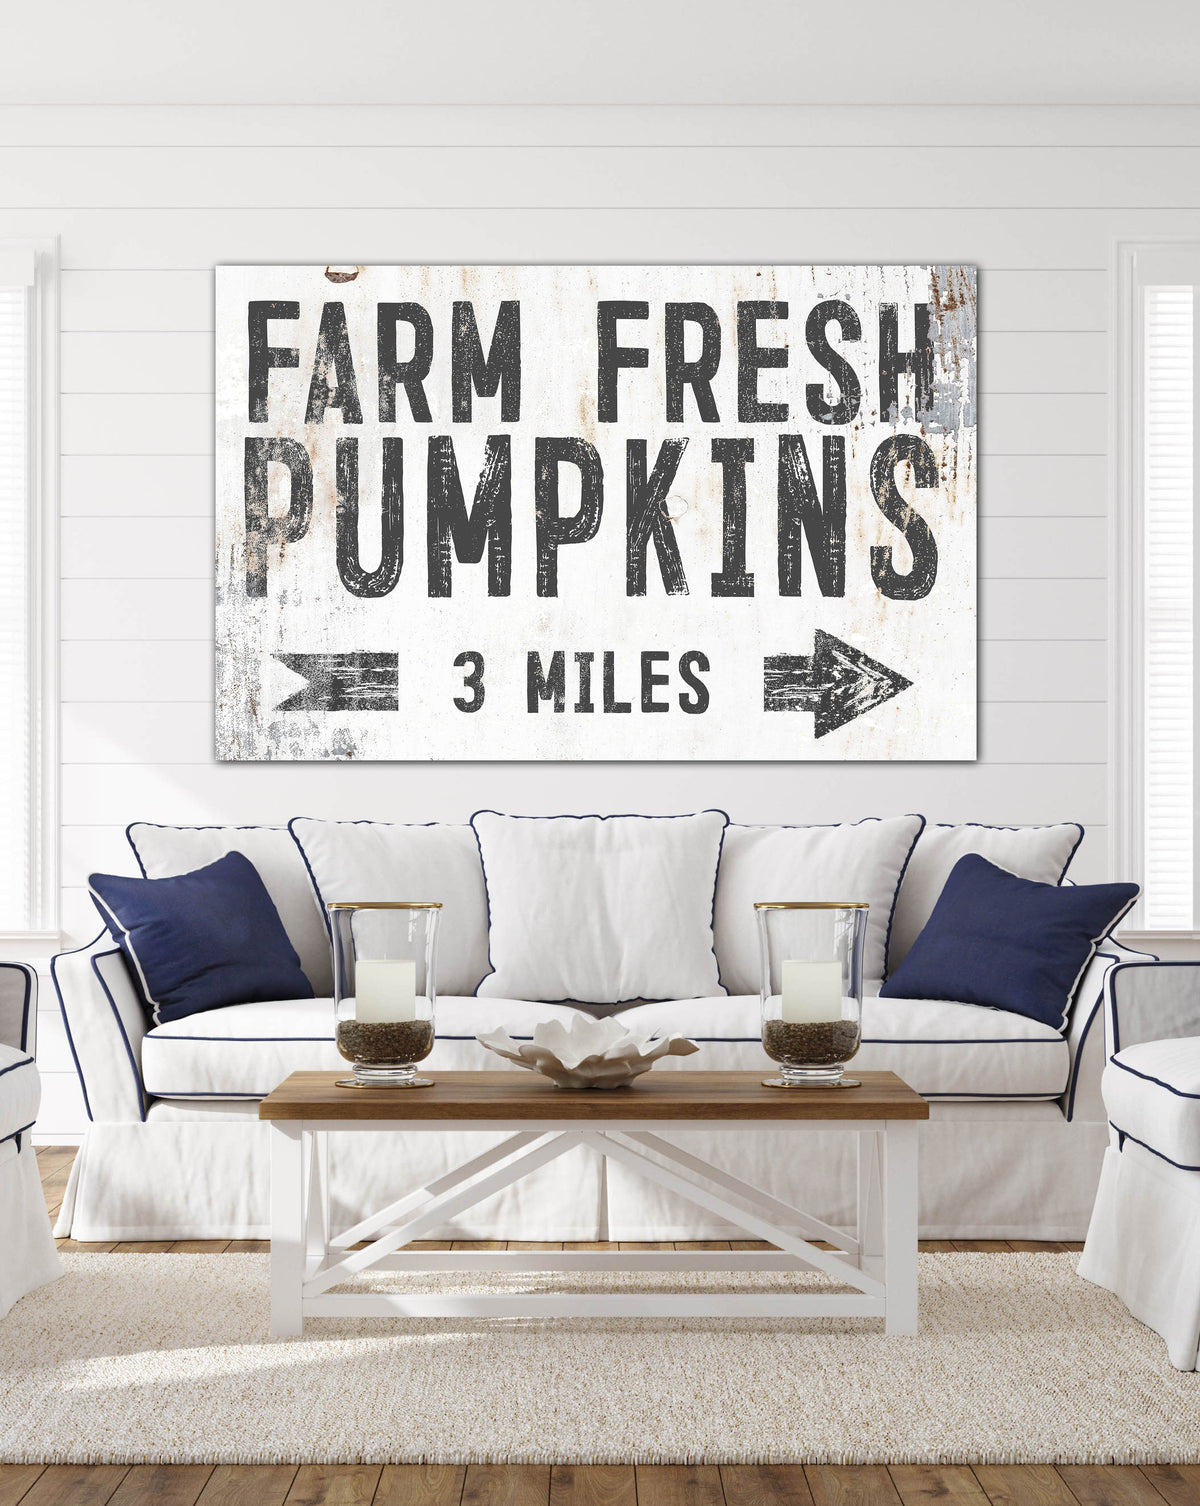 Farm Fresh Pumpkins White Farmhouse Canvas Wall Art - LC56